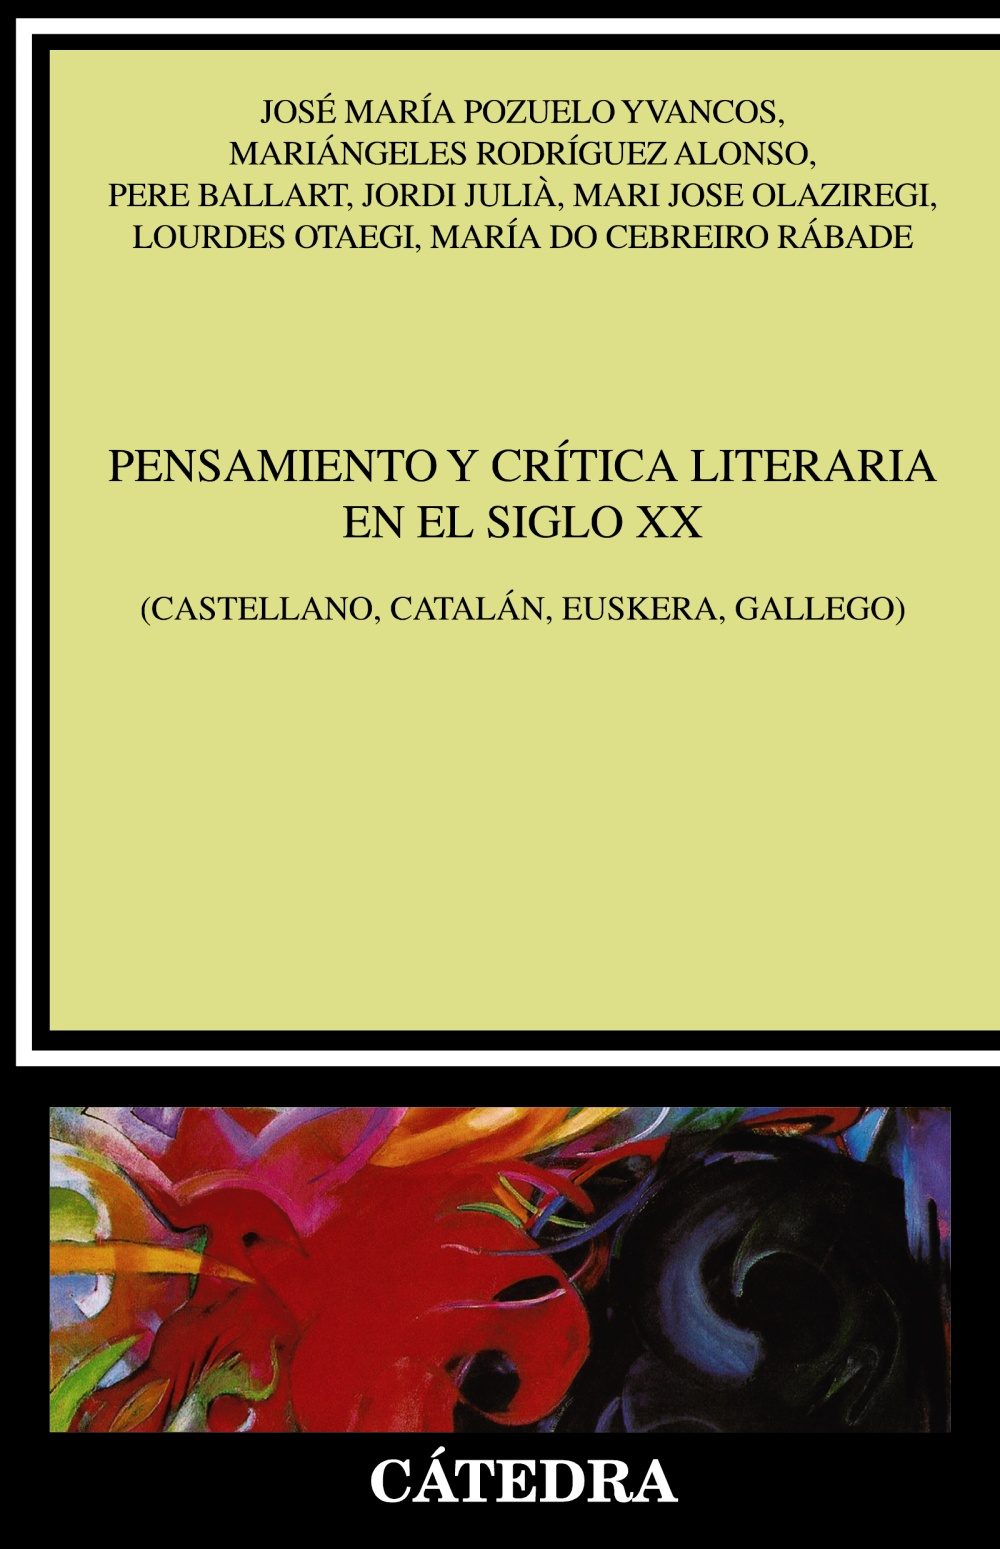 Portada del libro PENSAMIENTO Y CRÍTICA LITERARIA EN EL SIGLO XX (Castellano, catalán, euskera, gallego)